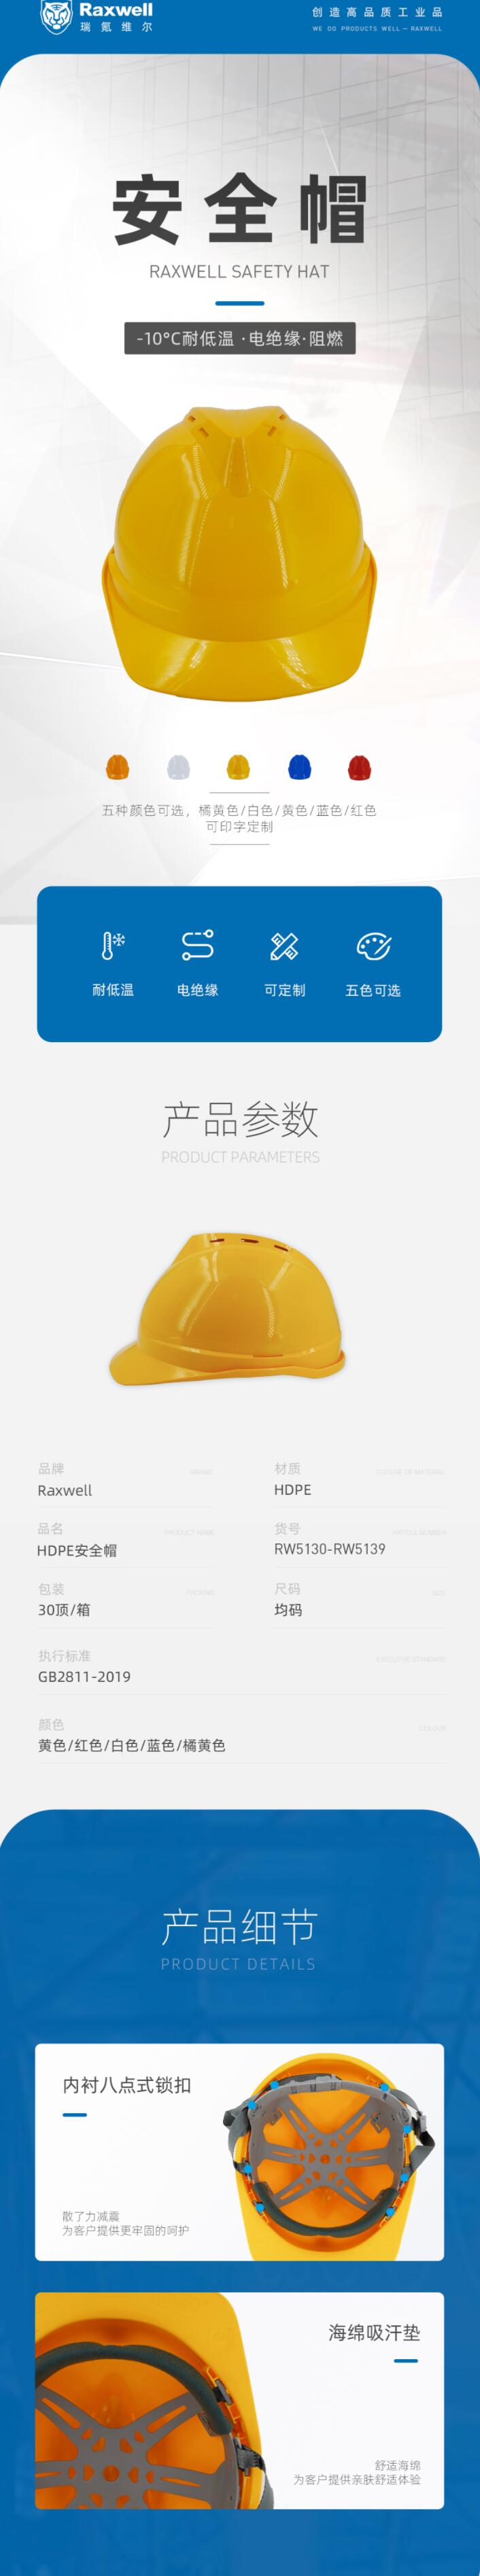 瑞氪维尔RW5133 HDPE带透气孔安全帽图片